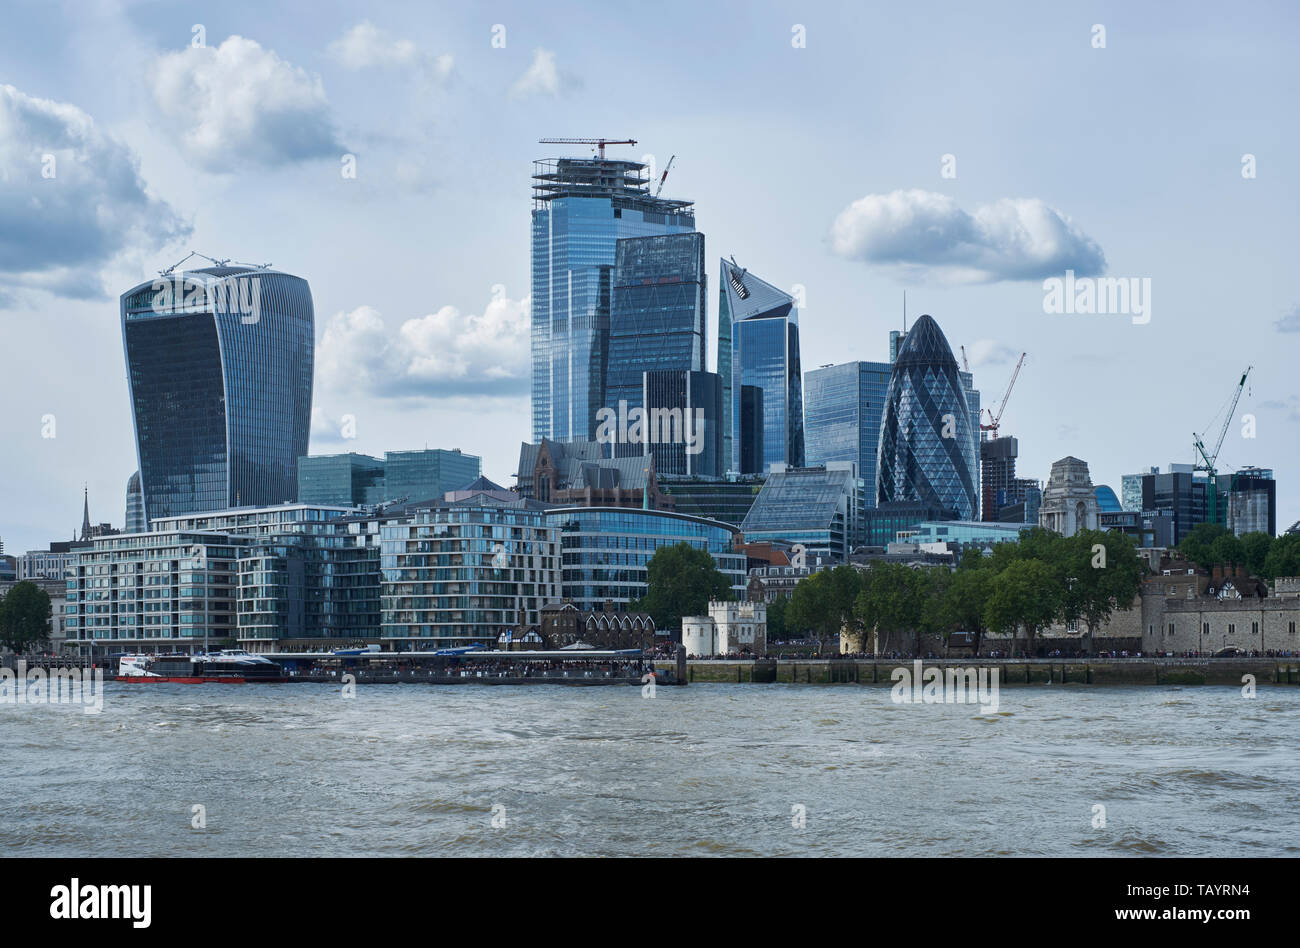 City of London grattacieli, visto con il fiume Tamigi. Sulla destra sono parti della Torre di Londra. Da destra a sinistra: il Gherkin (30 St Mary Axe Foto Stock